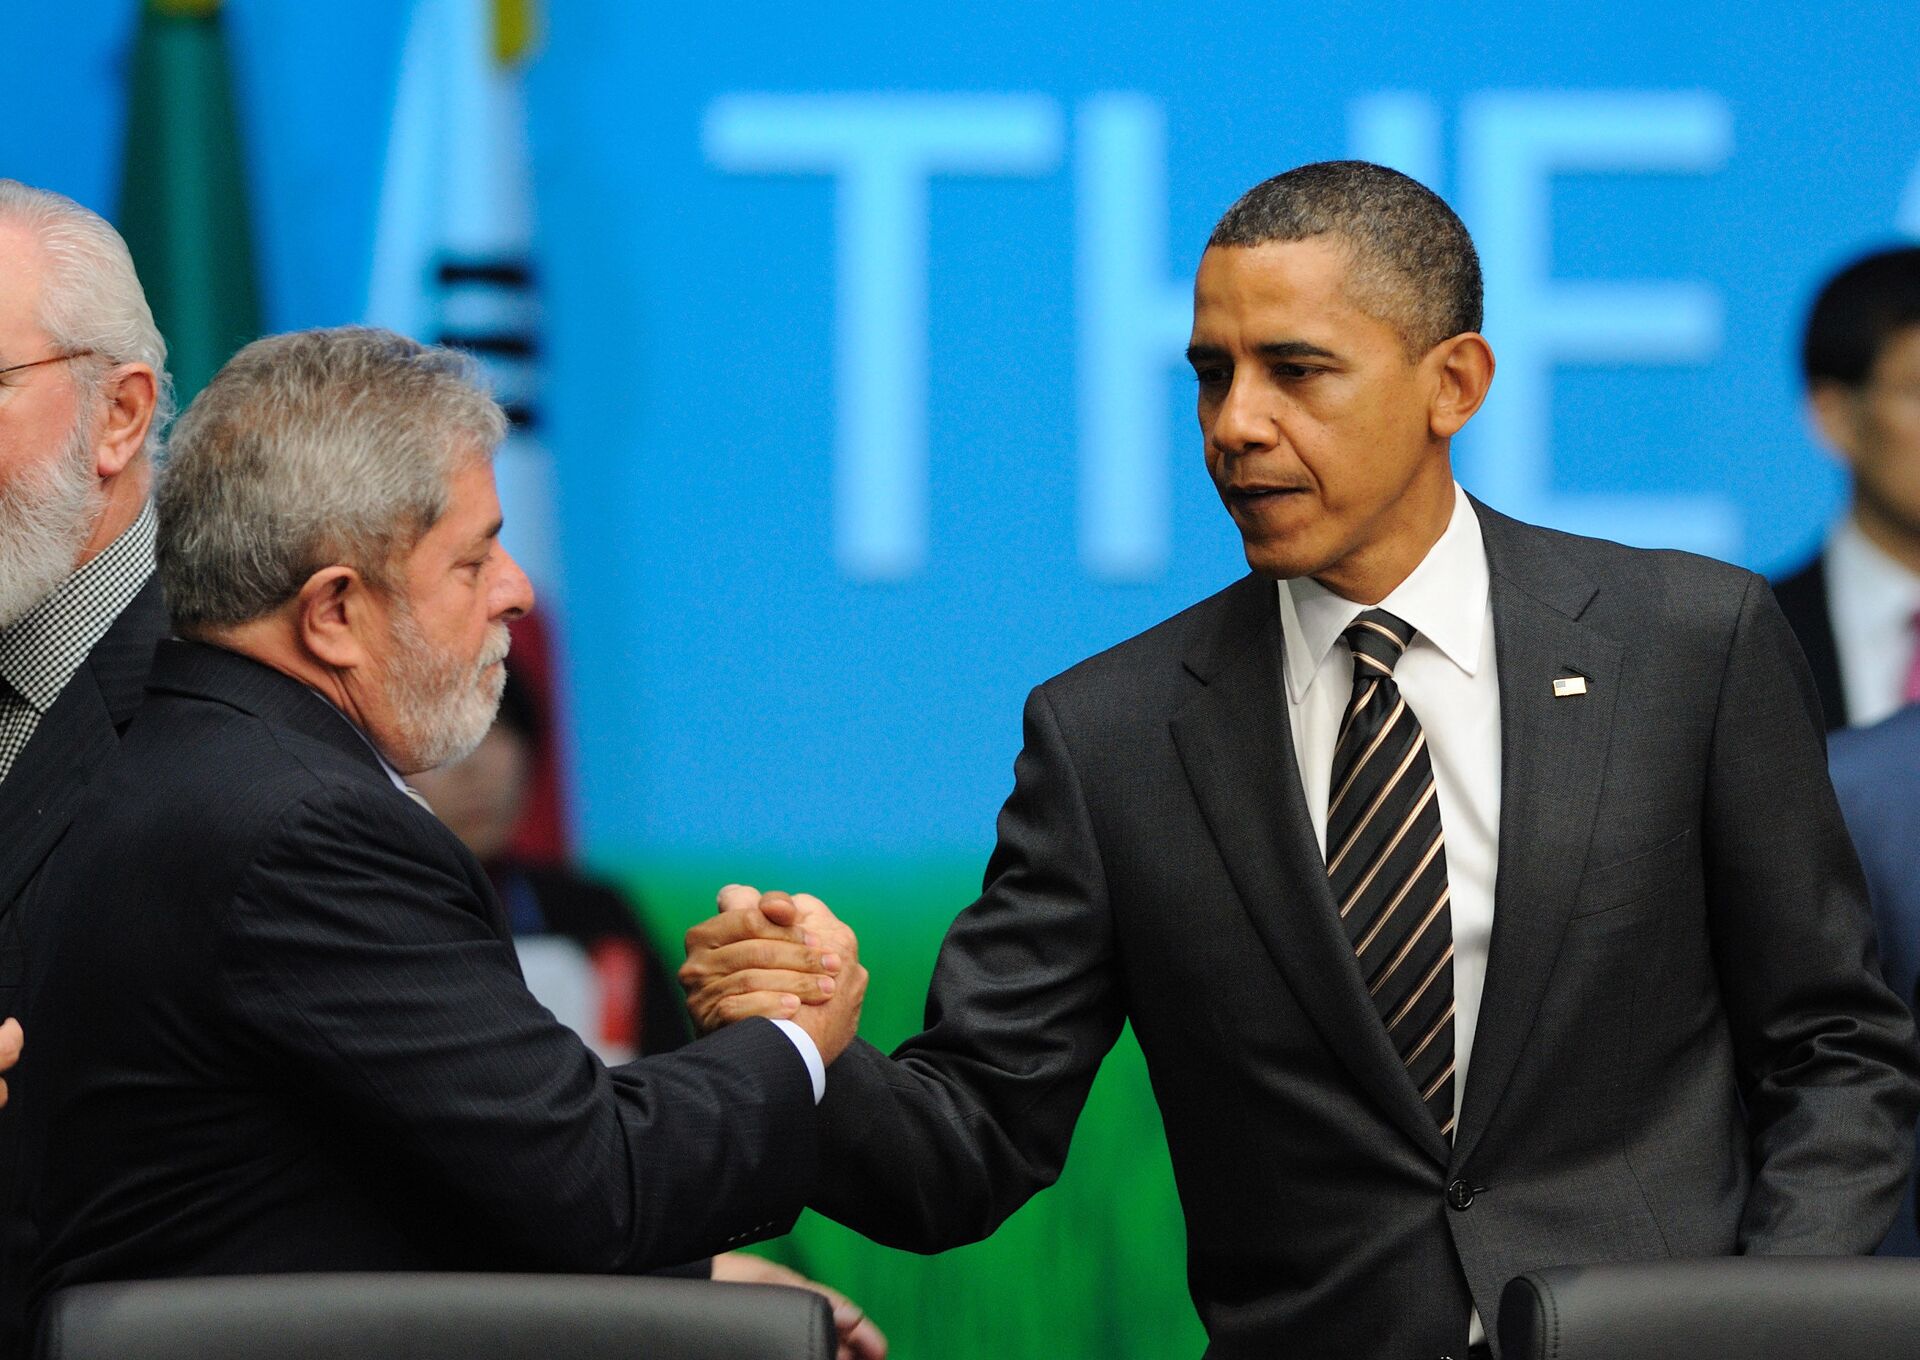 Os então presidentes de Brasil e EUA, Luiz Inácio Lula da Silva e Barack Obama, se cumprimentam durante encontro do G20 na Coreia do Sul (arquivo) - Sputnik Brasil, 1920, 06.10.2022